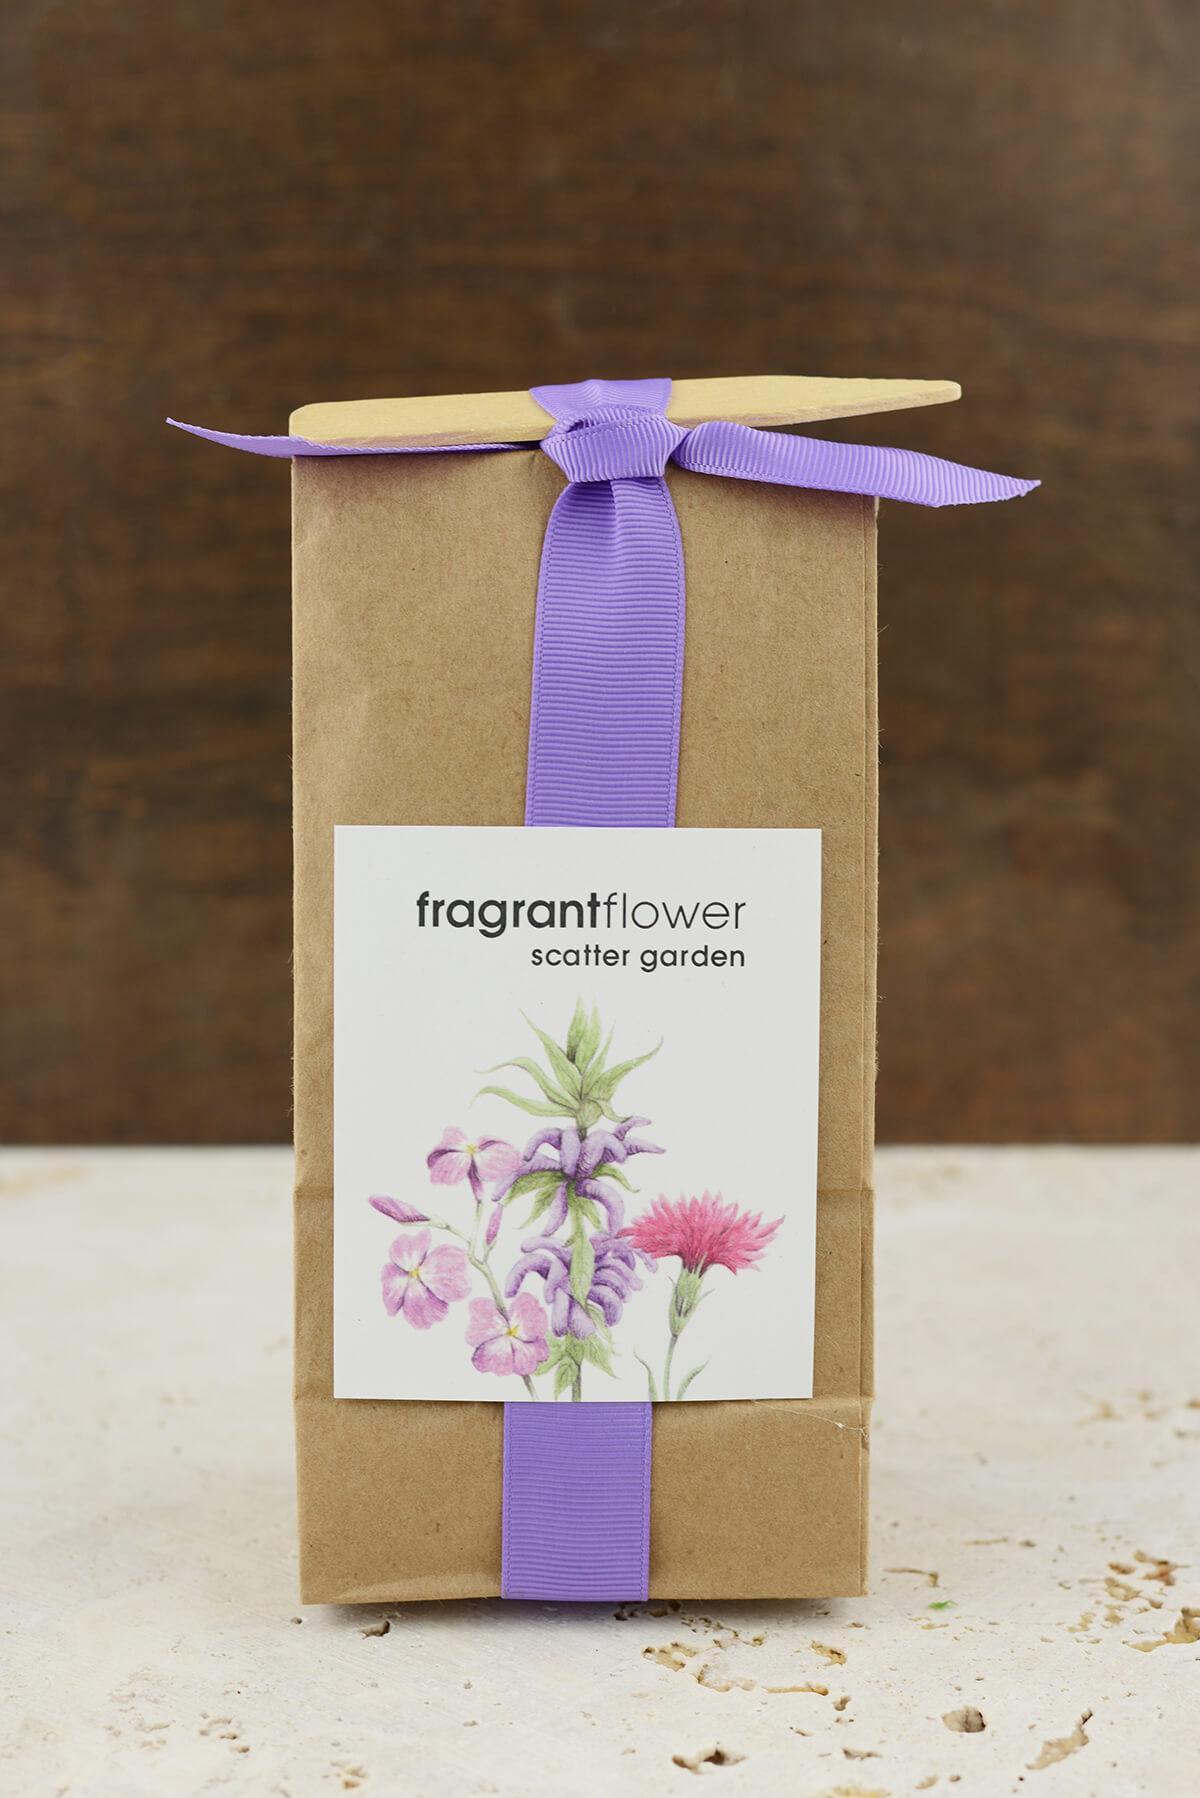 fragrant flower scatter garden seed pack